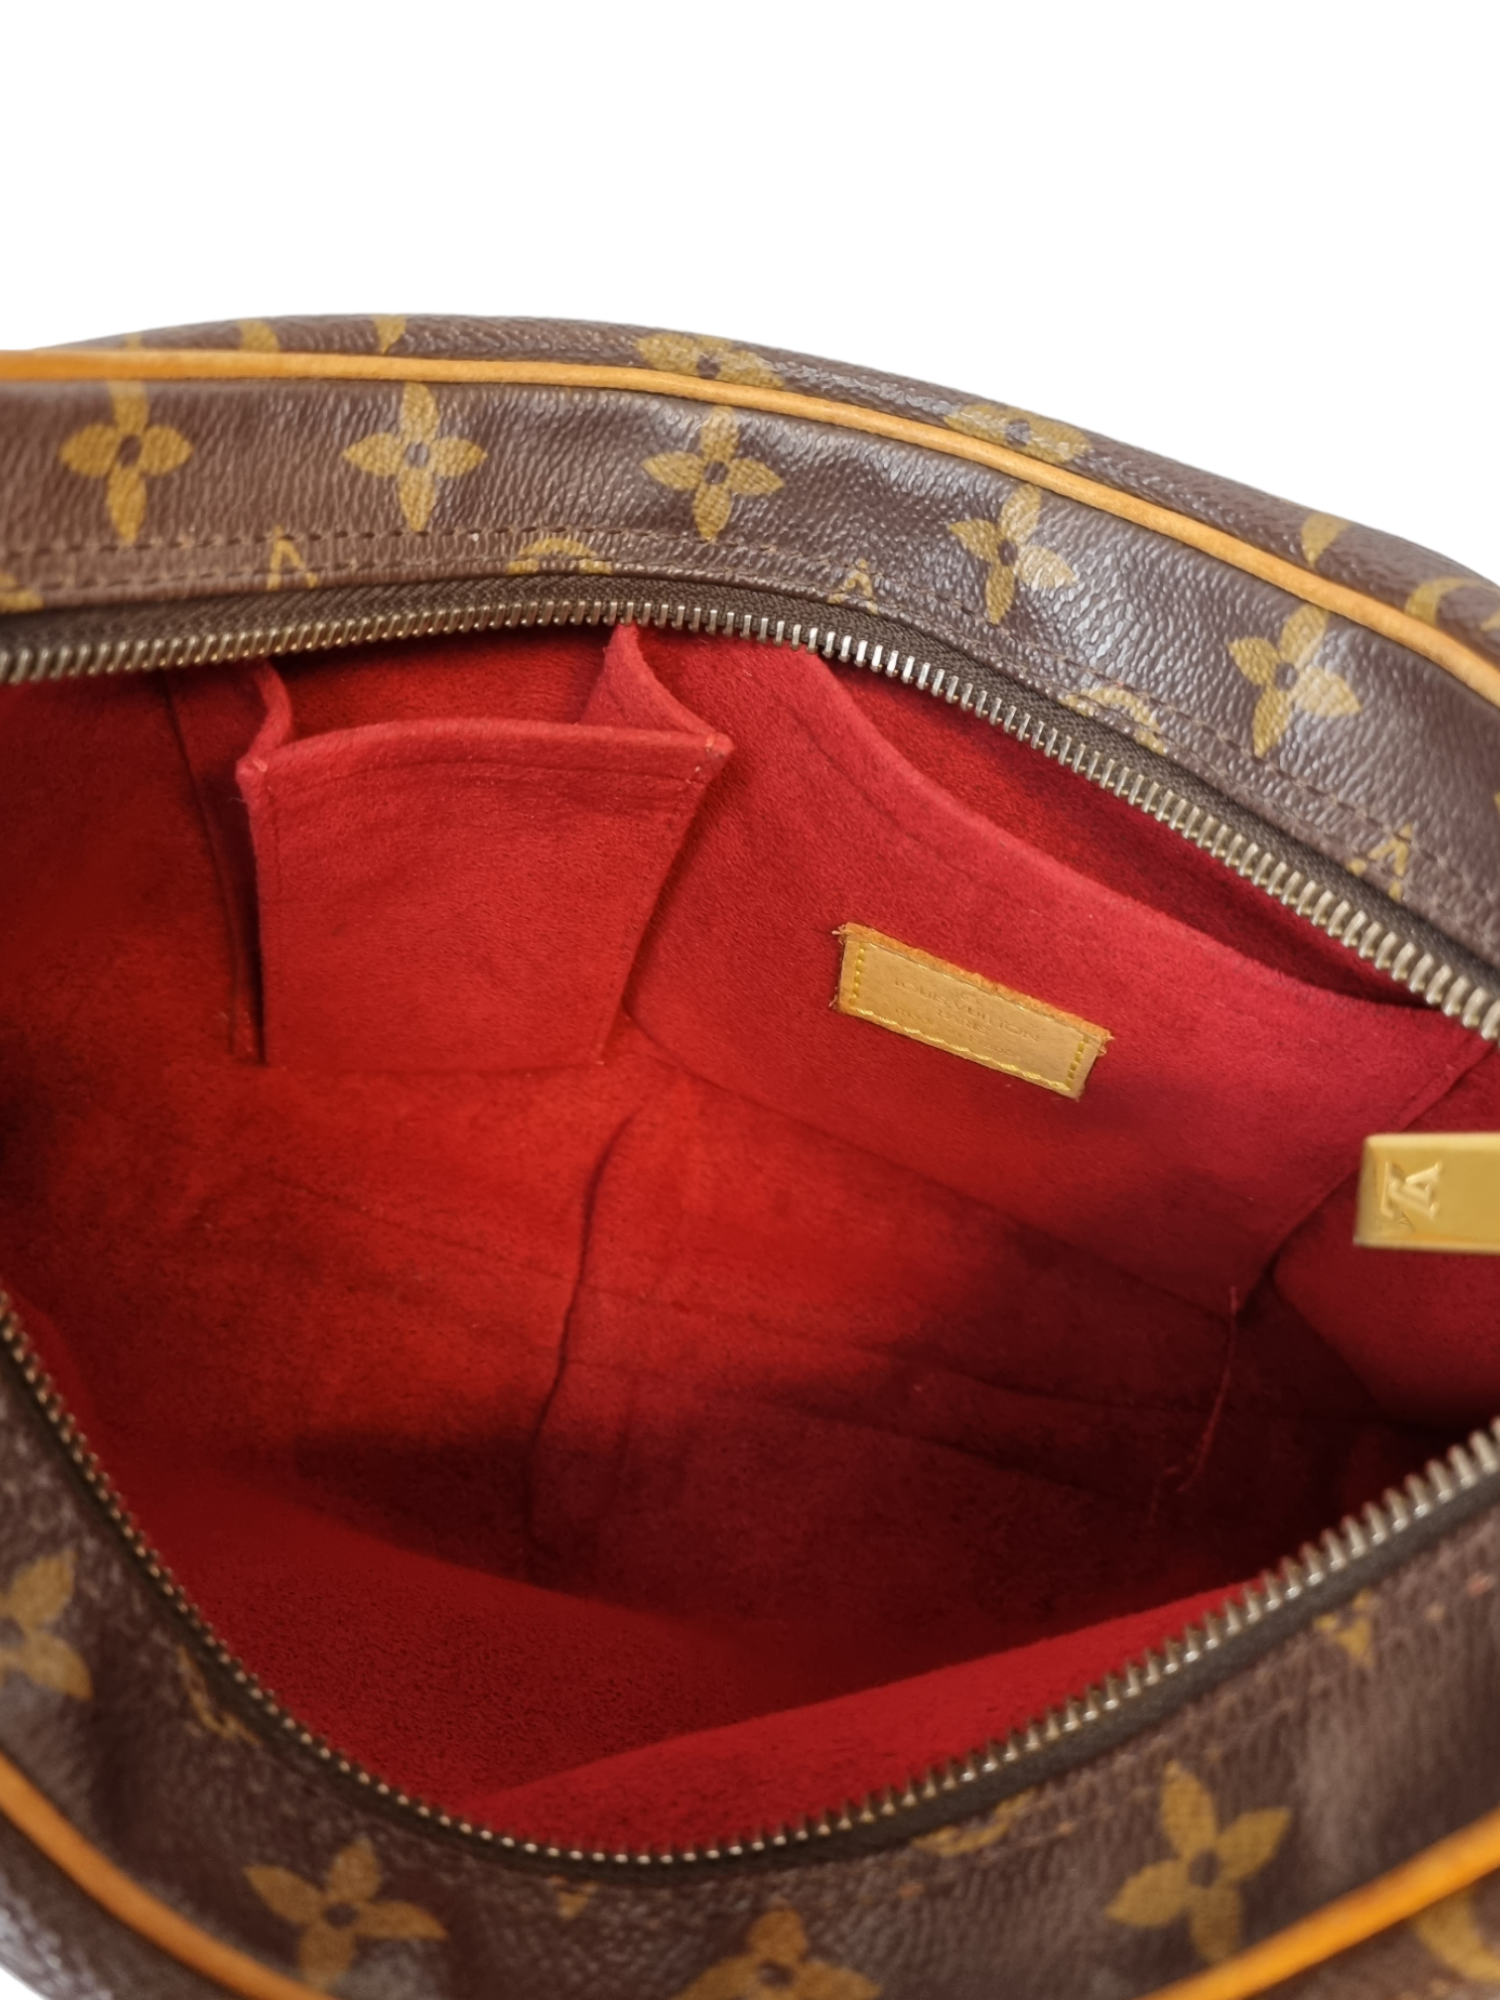 Gorgeous Authentic Vintage Louis Vuitton Monogram Croissant MM Bag w/Dustbag